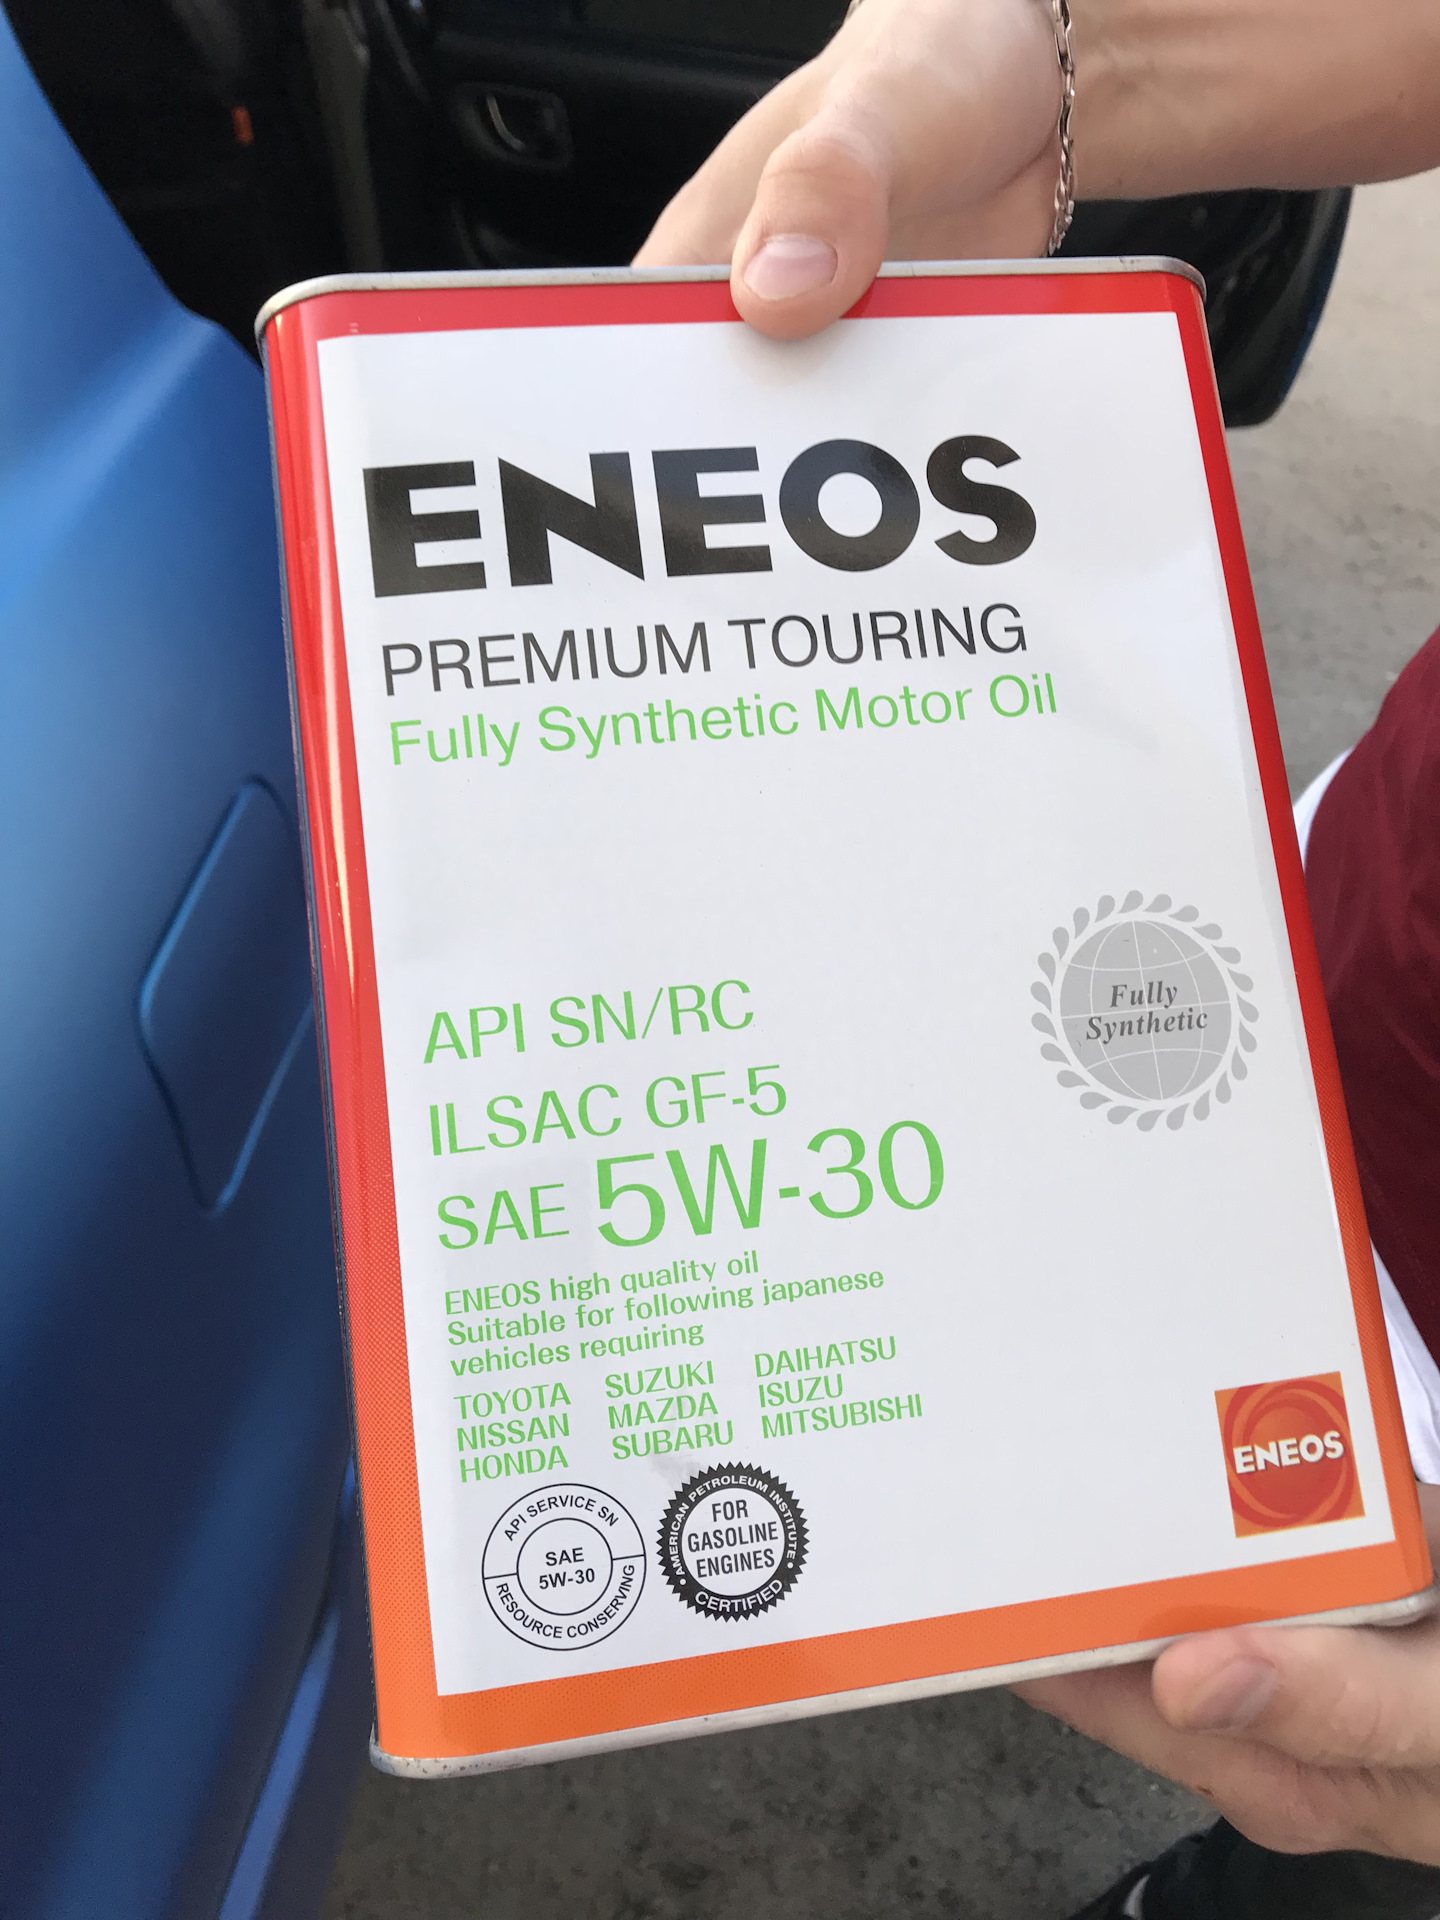 Eneos premium touring 5w30. ENEOS Premium Touring 5w-30 API SN/RC ILSAC gf-5. ENEOS Premium Touring fully Synthetic Киа Рио 3 драйв 2. Энеос премиум туринг как отличить подделку. Когда сменили надпись fully Synthetic на Synthetic Technology Nissan.